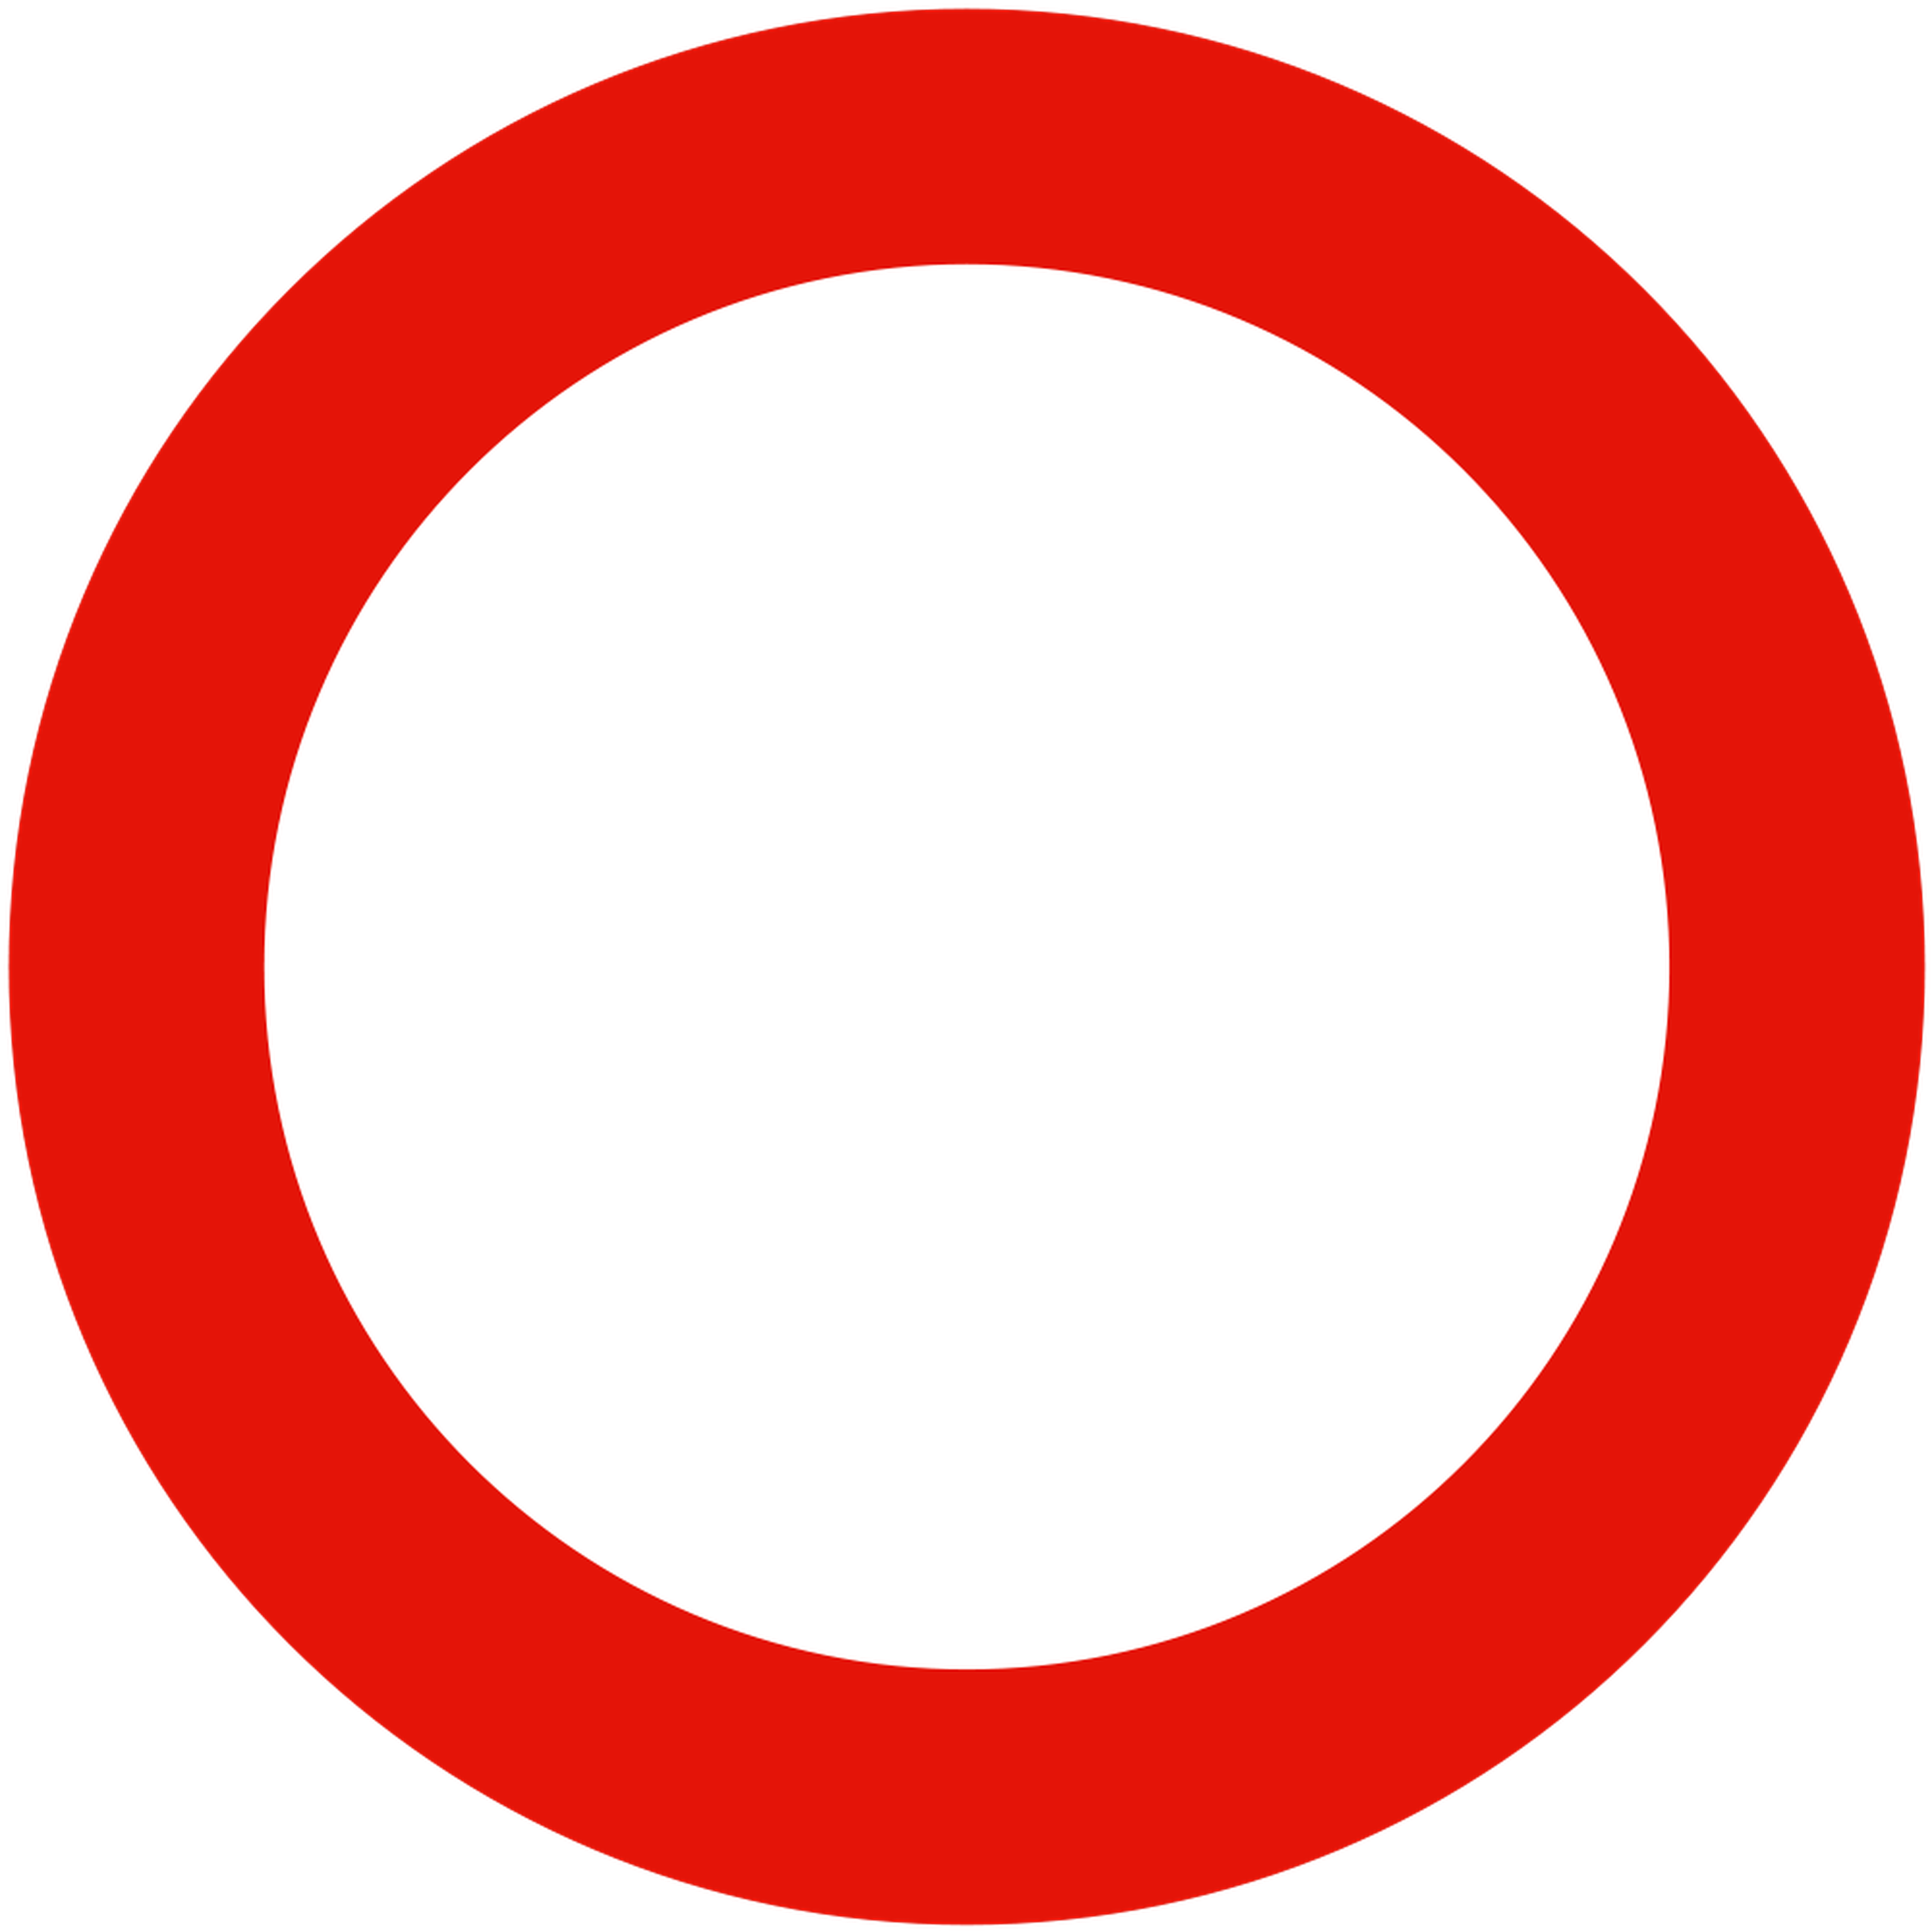 Señal de tráfico: circulación prohibida